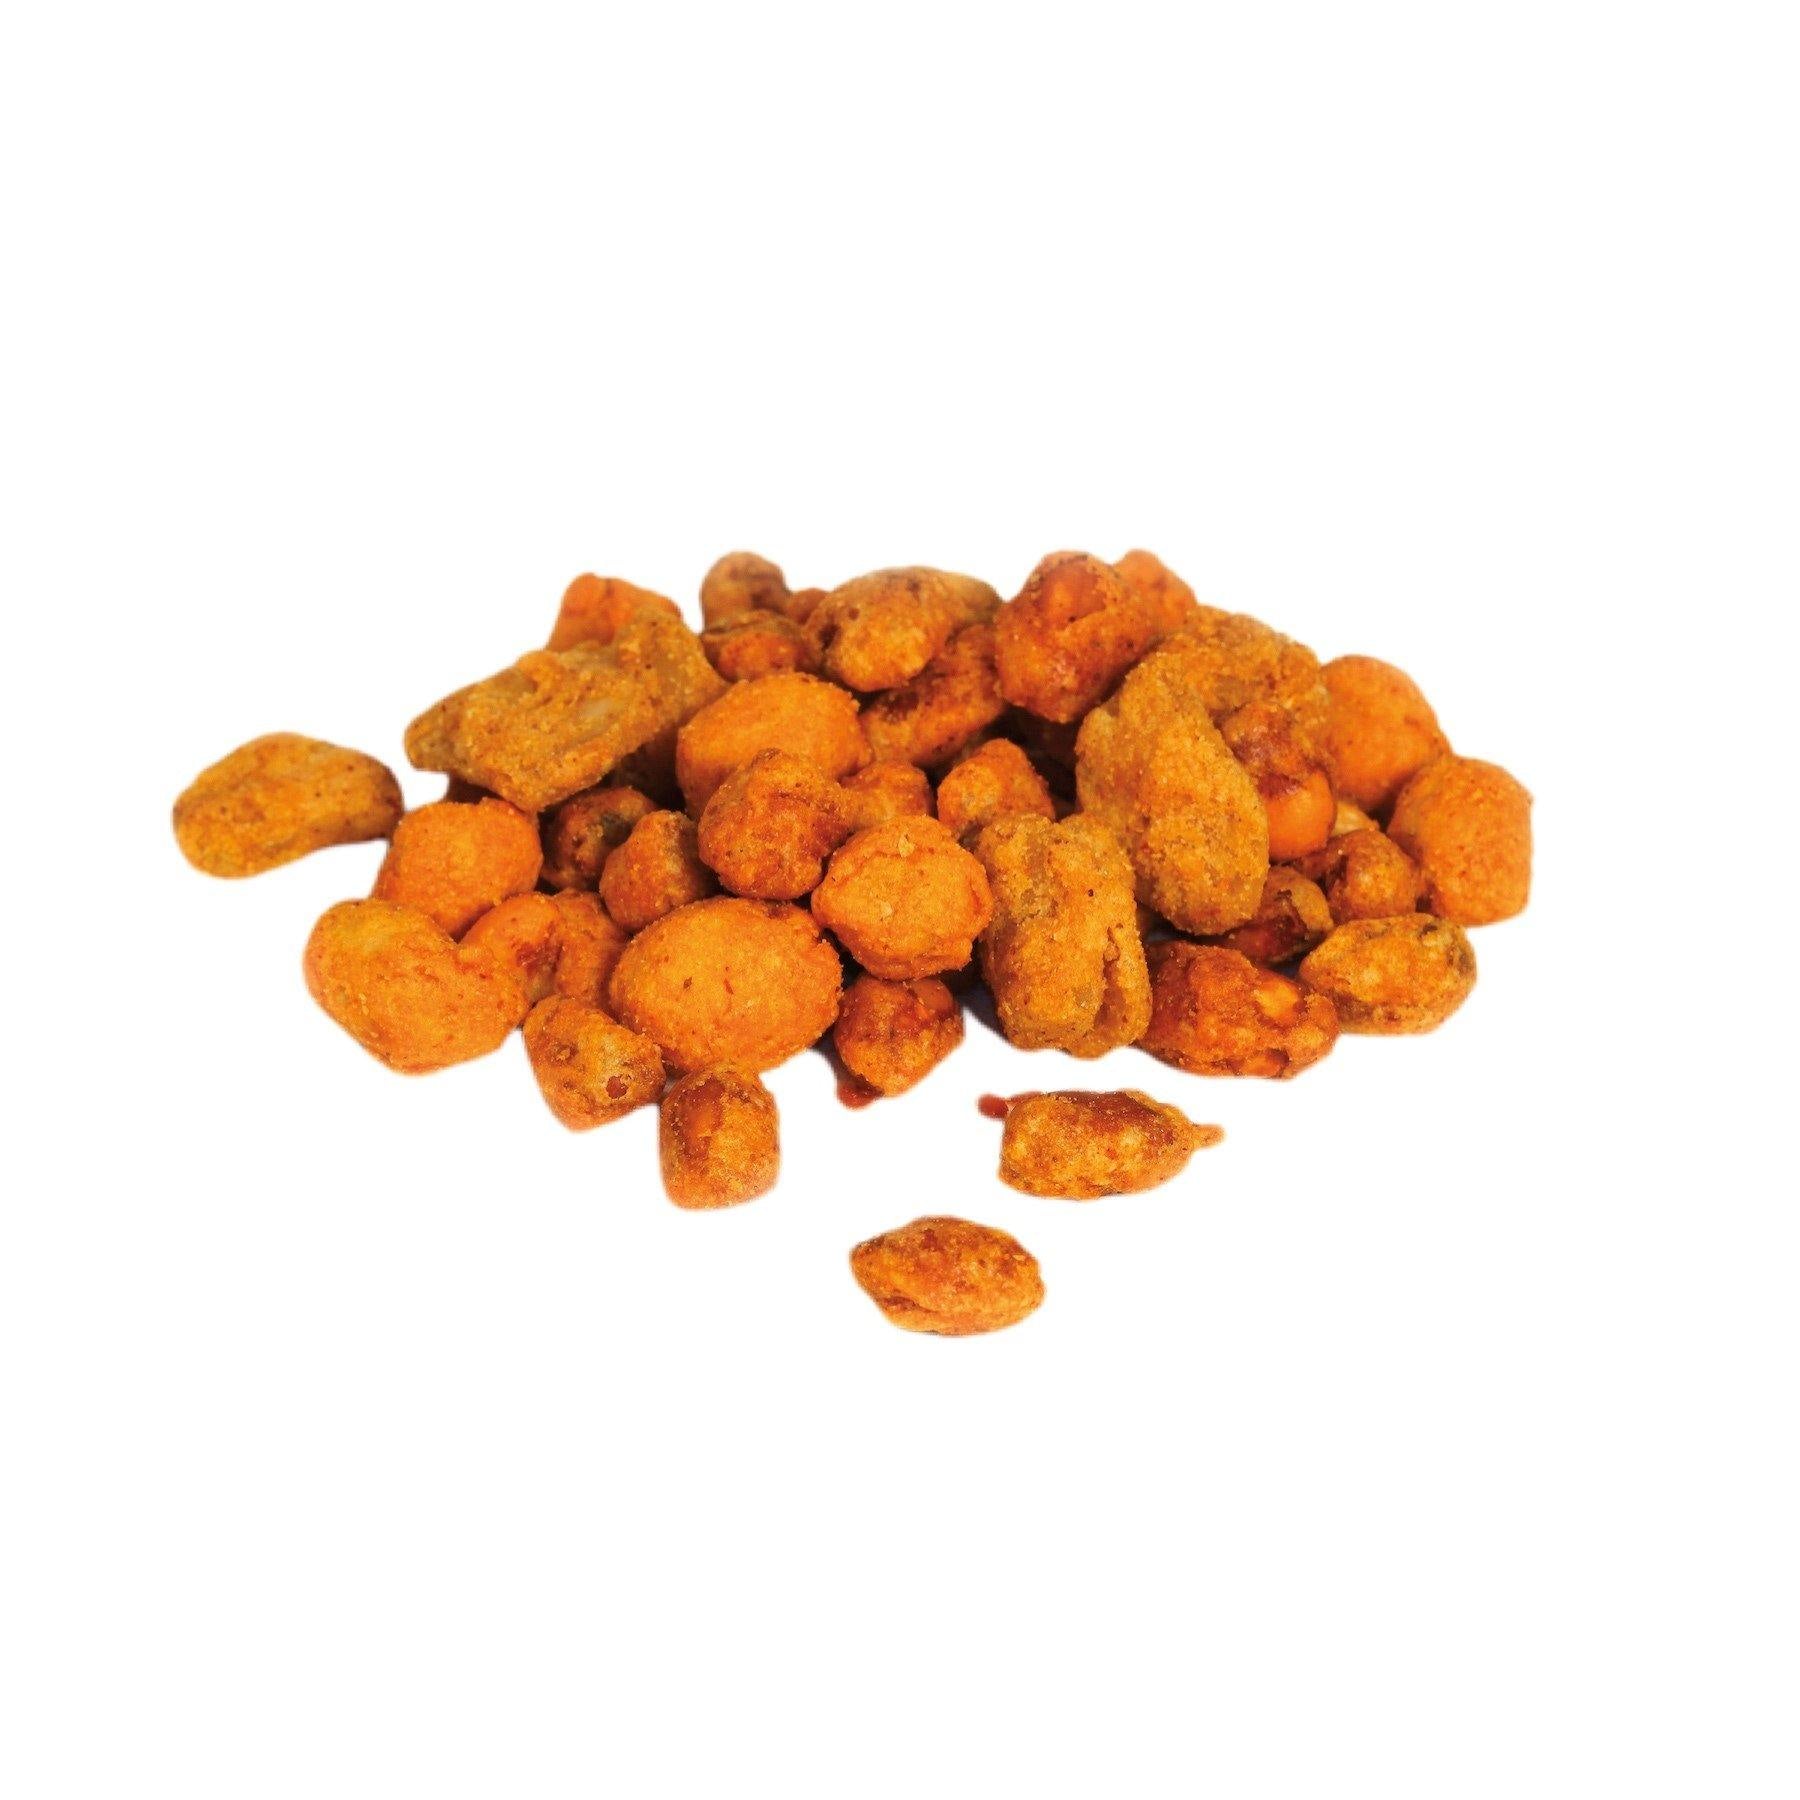 Spiced Nuts & Satay Mix - The Dormen Food Company